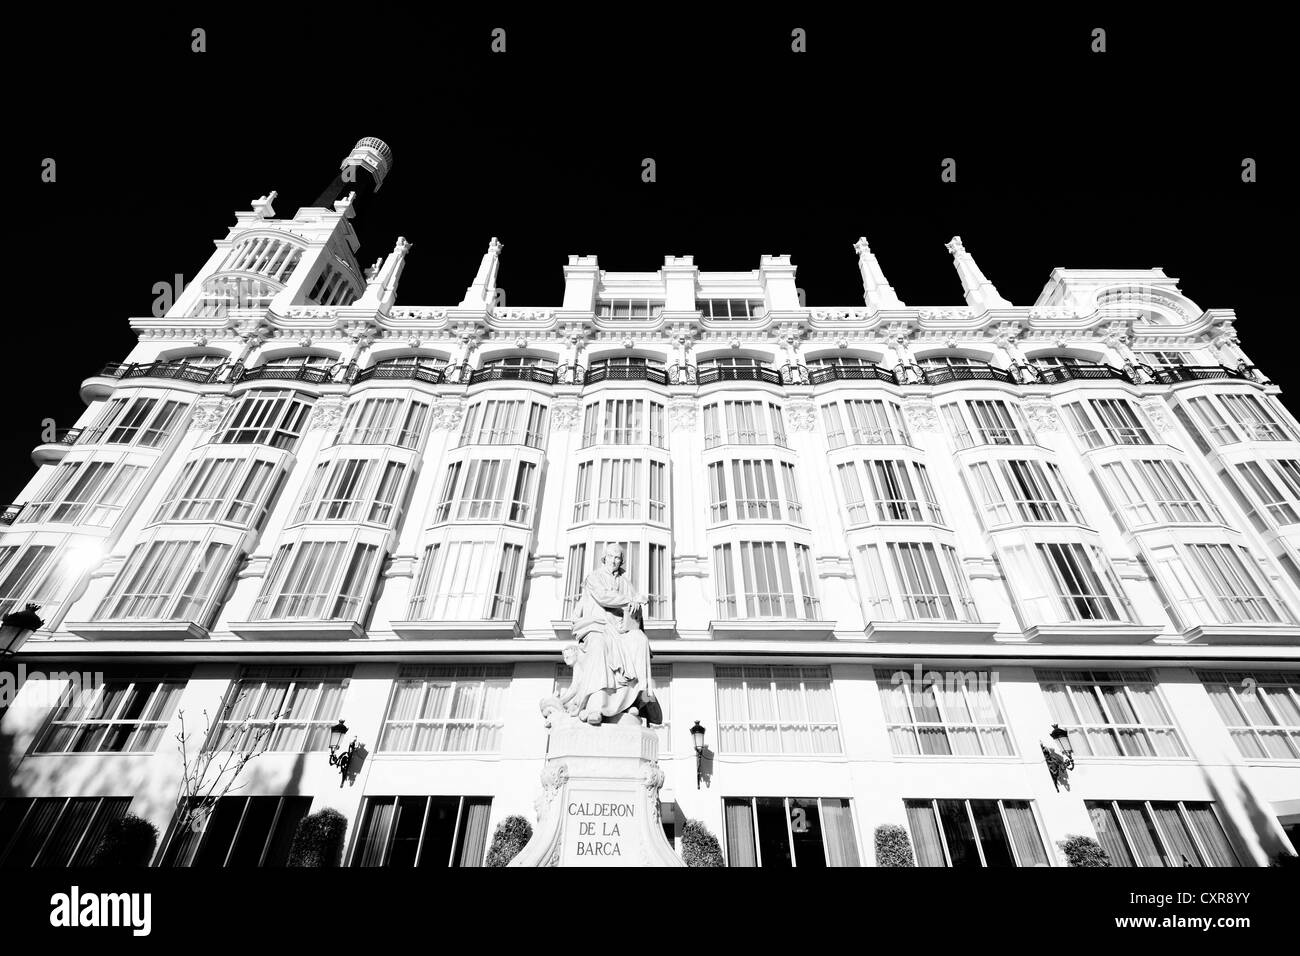 Pedro Calderon de la Barca monumento davanti al Gran Meliá Fenix Hotel di lusso, Plaza Santa Ana, Madrid, Spagna, Europa Foto Stock